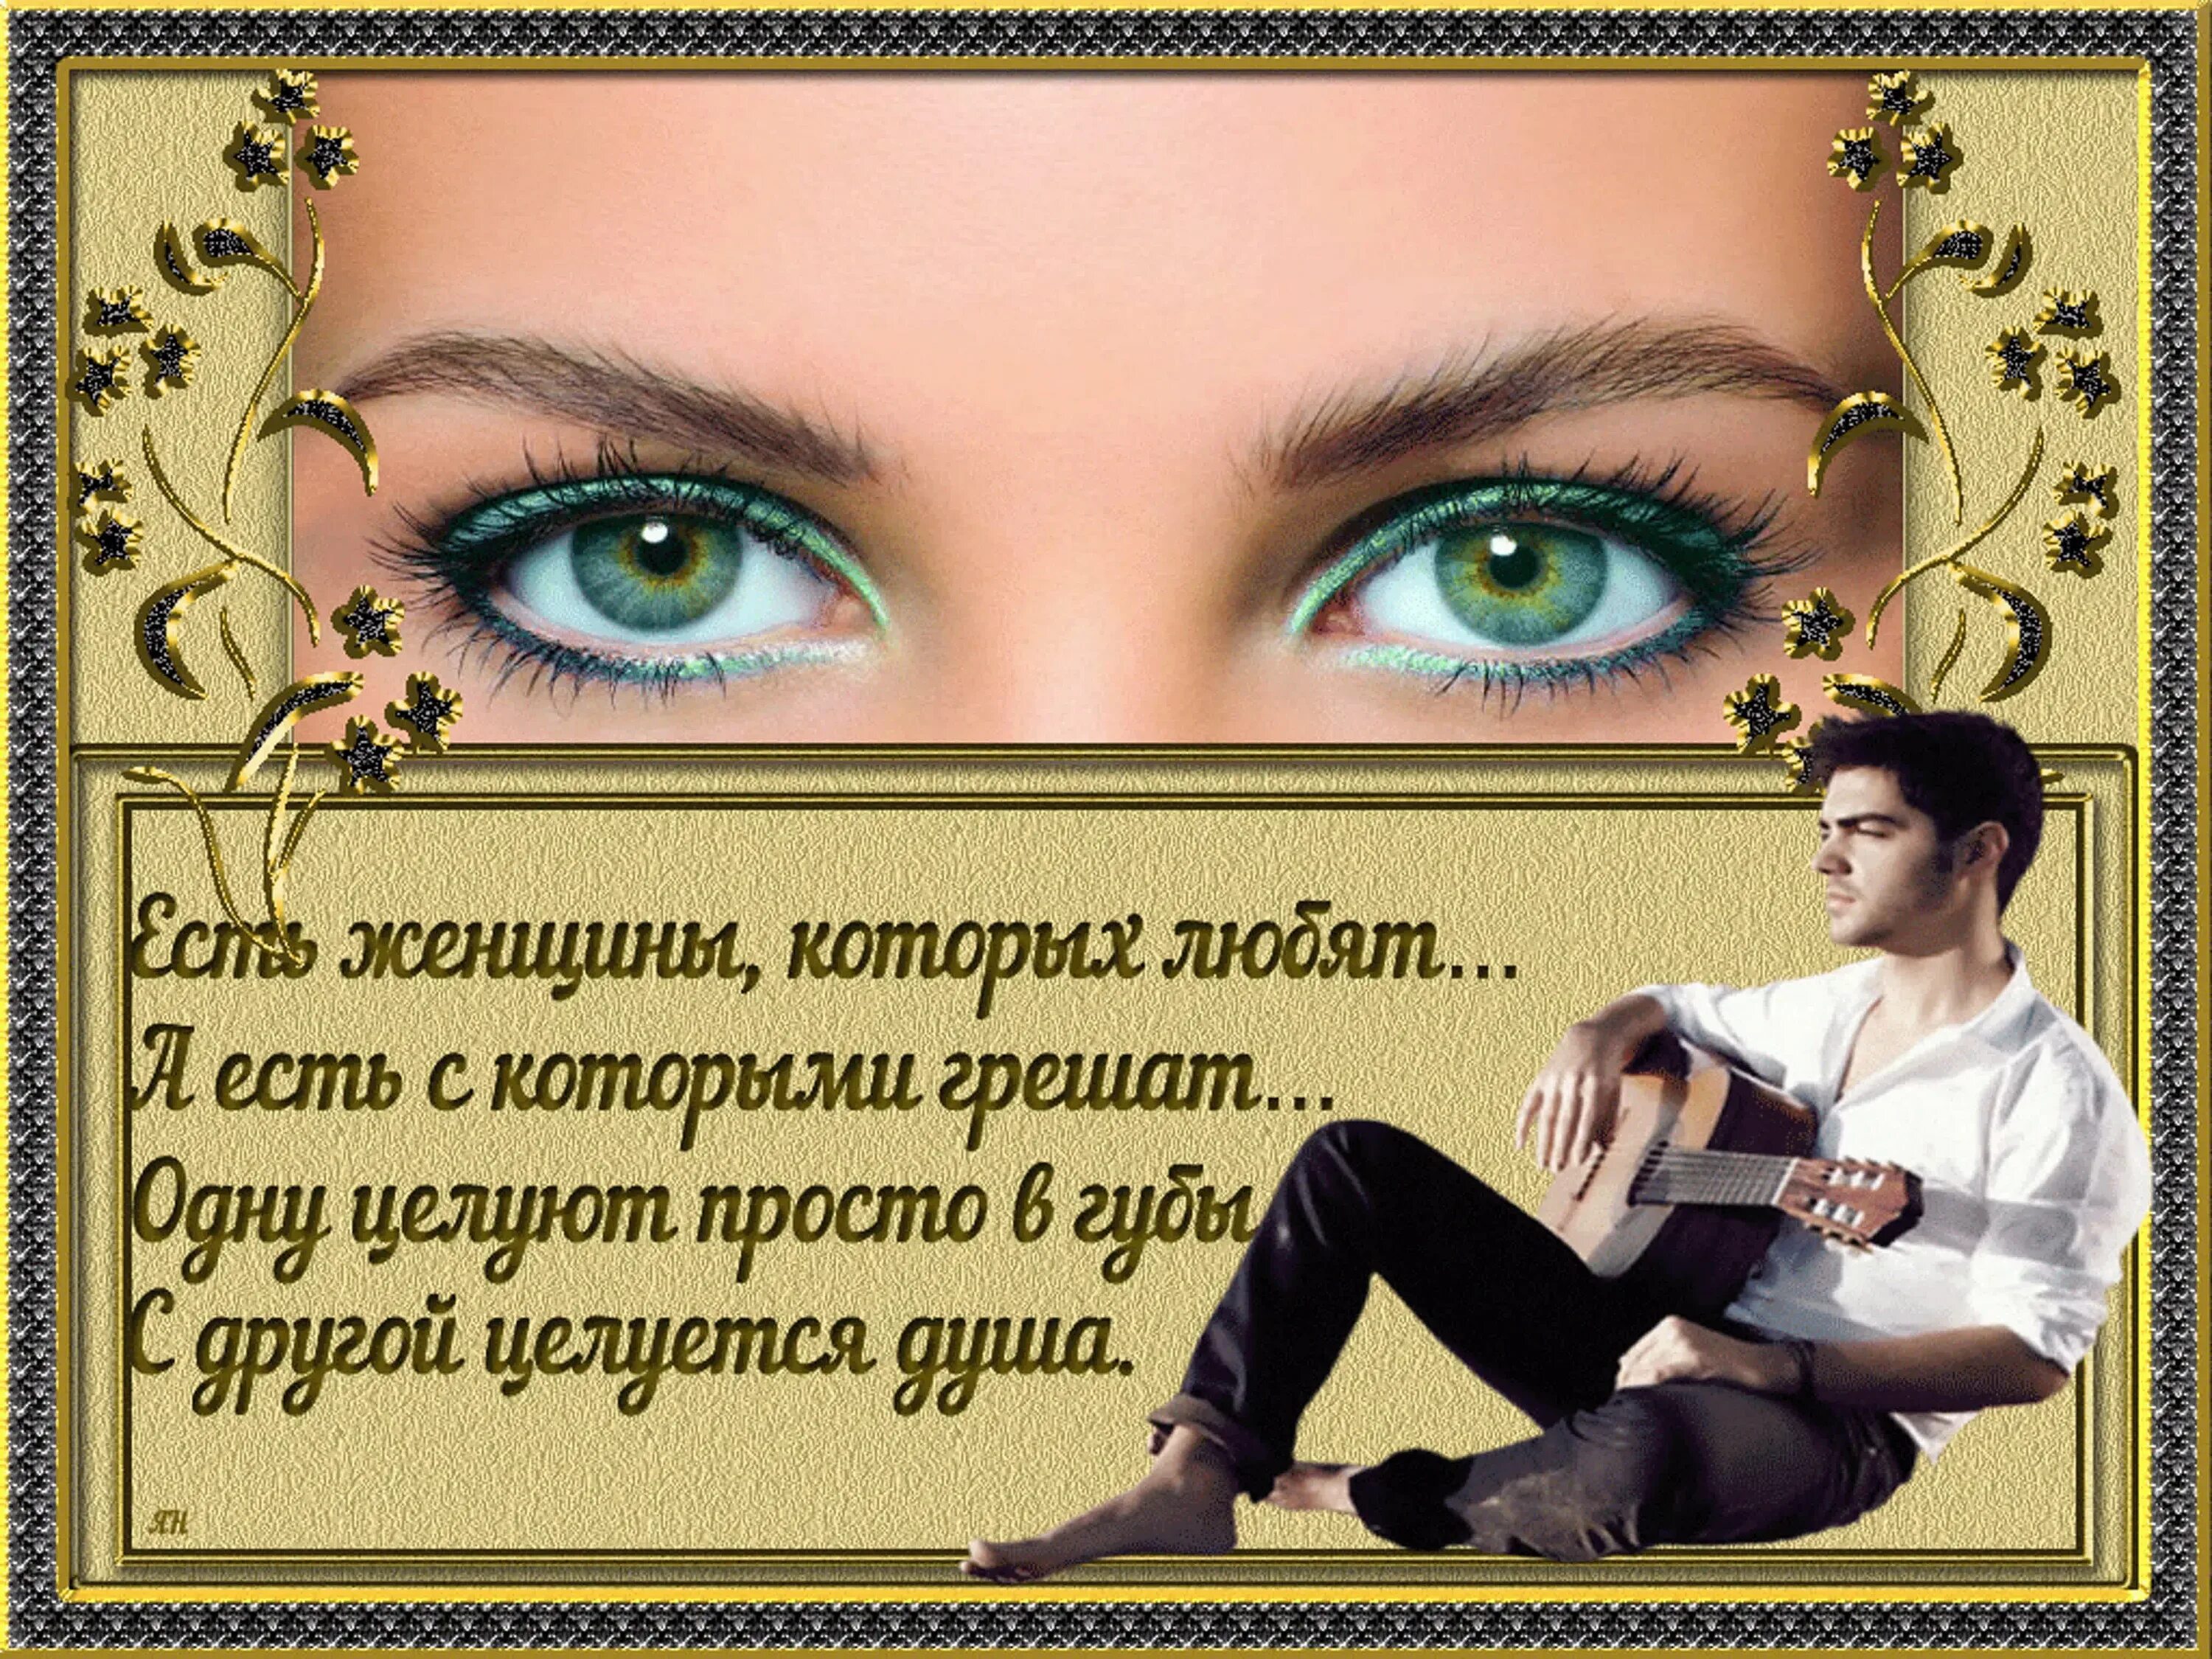 Стих про красивые глаза. Стихи про красивые женские глаза. Стихи про красивые глаза женщины. Стихи про женские глаза.